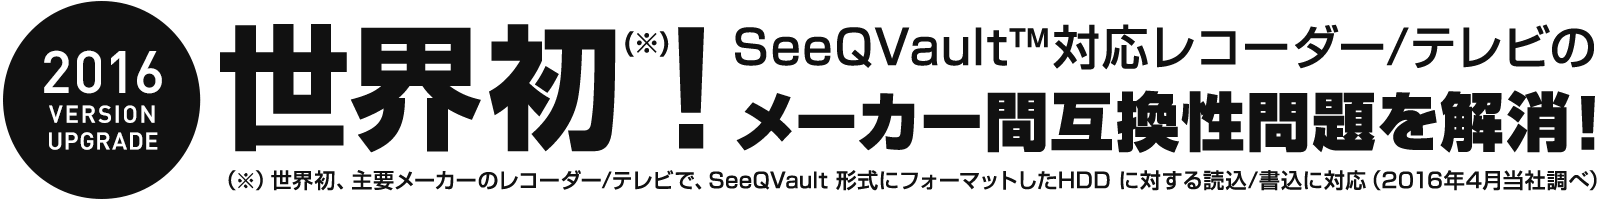 世界初！SeeQVault™ 対応レコーダー / テレビ のメーカー間互換性問題を解消！